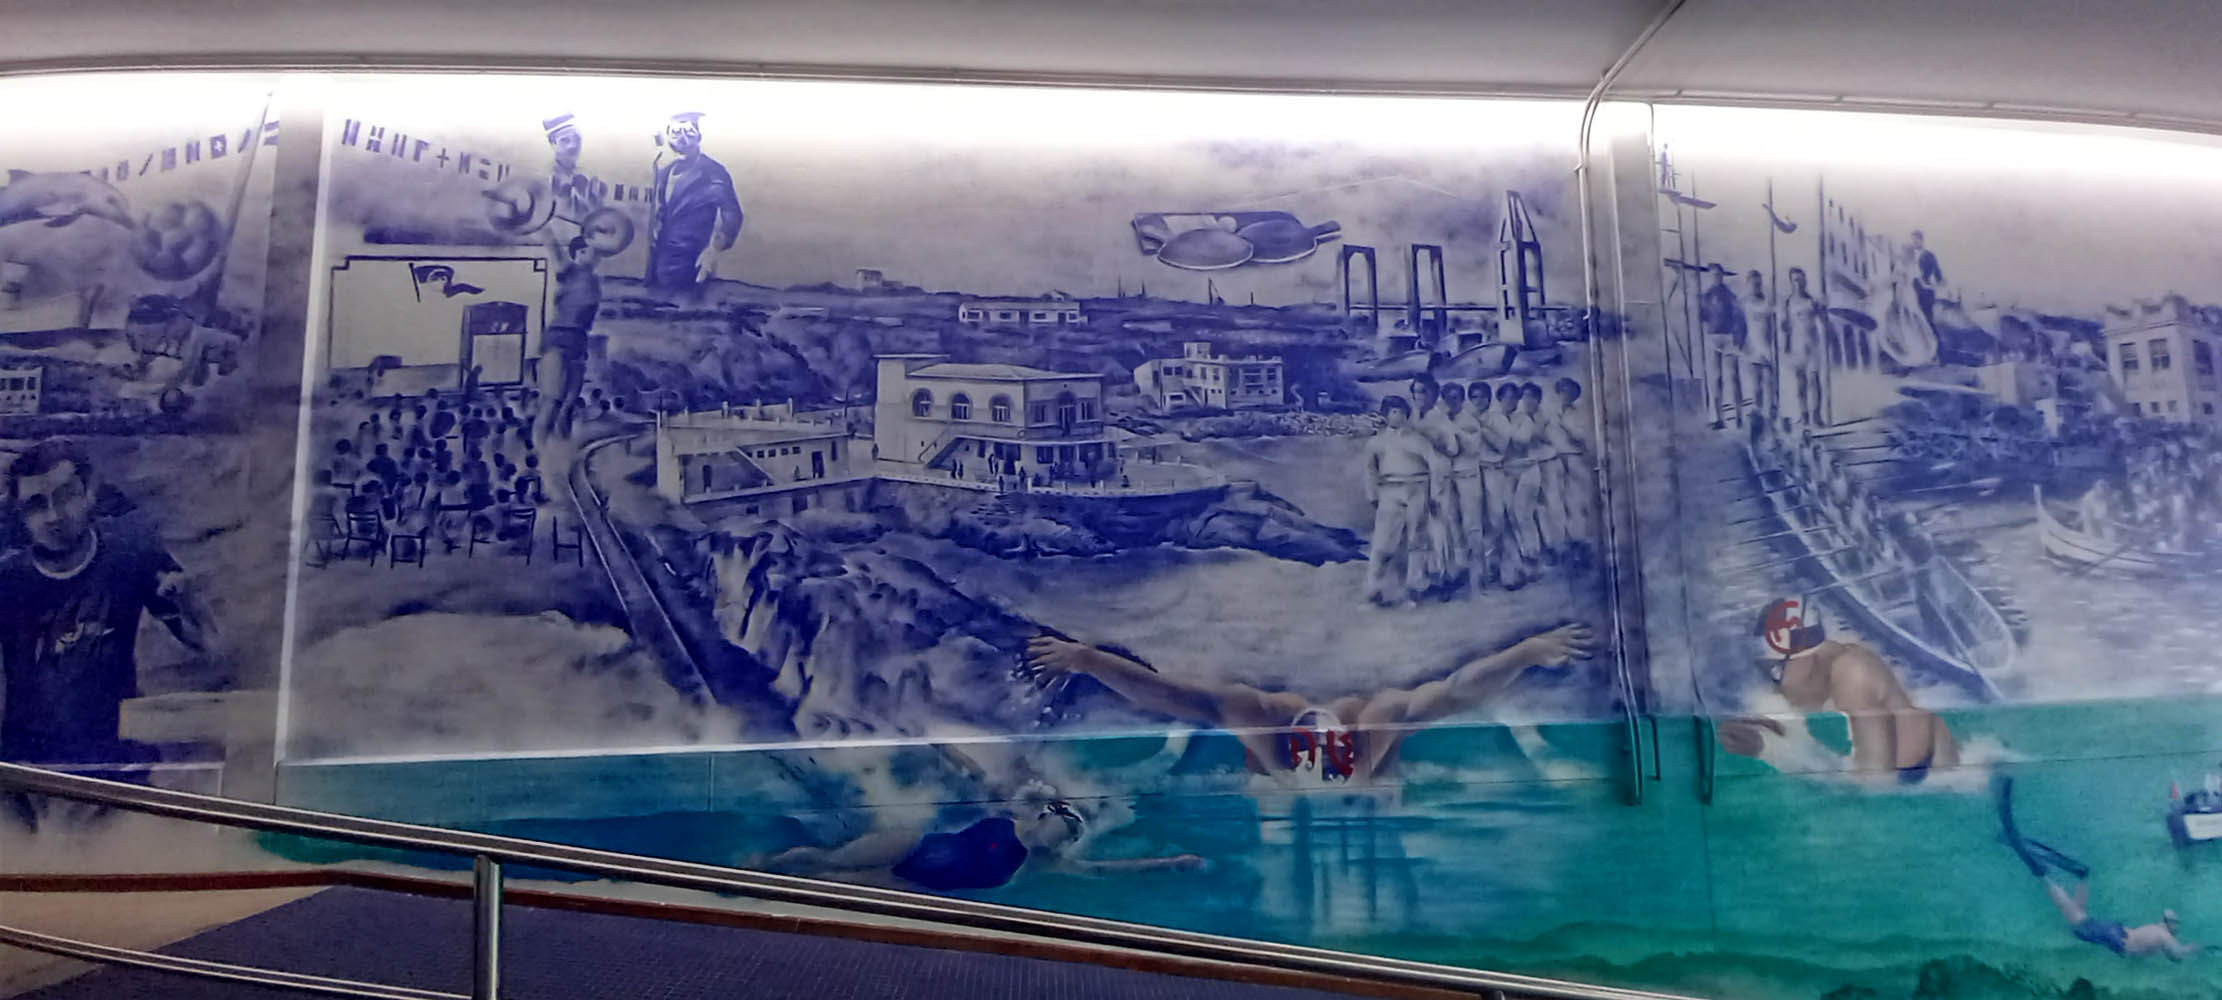 Club del Mar San Amaro Coruña-Mural Outón Años 50